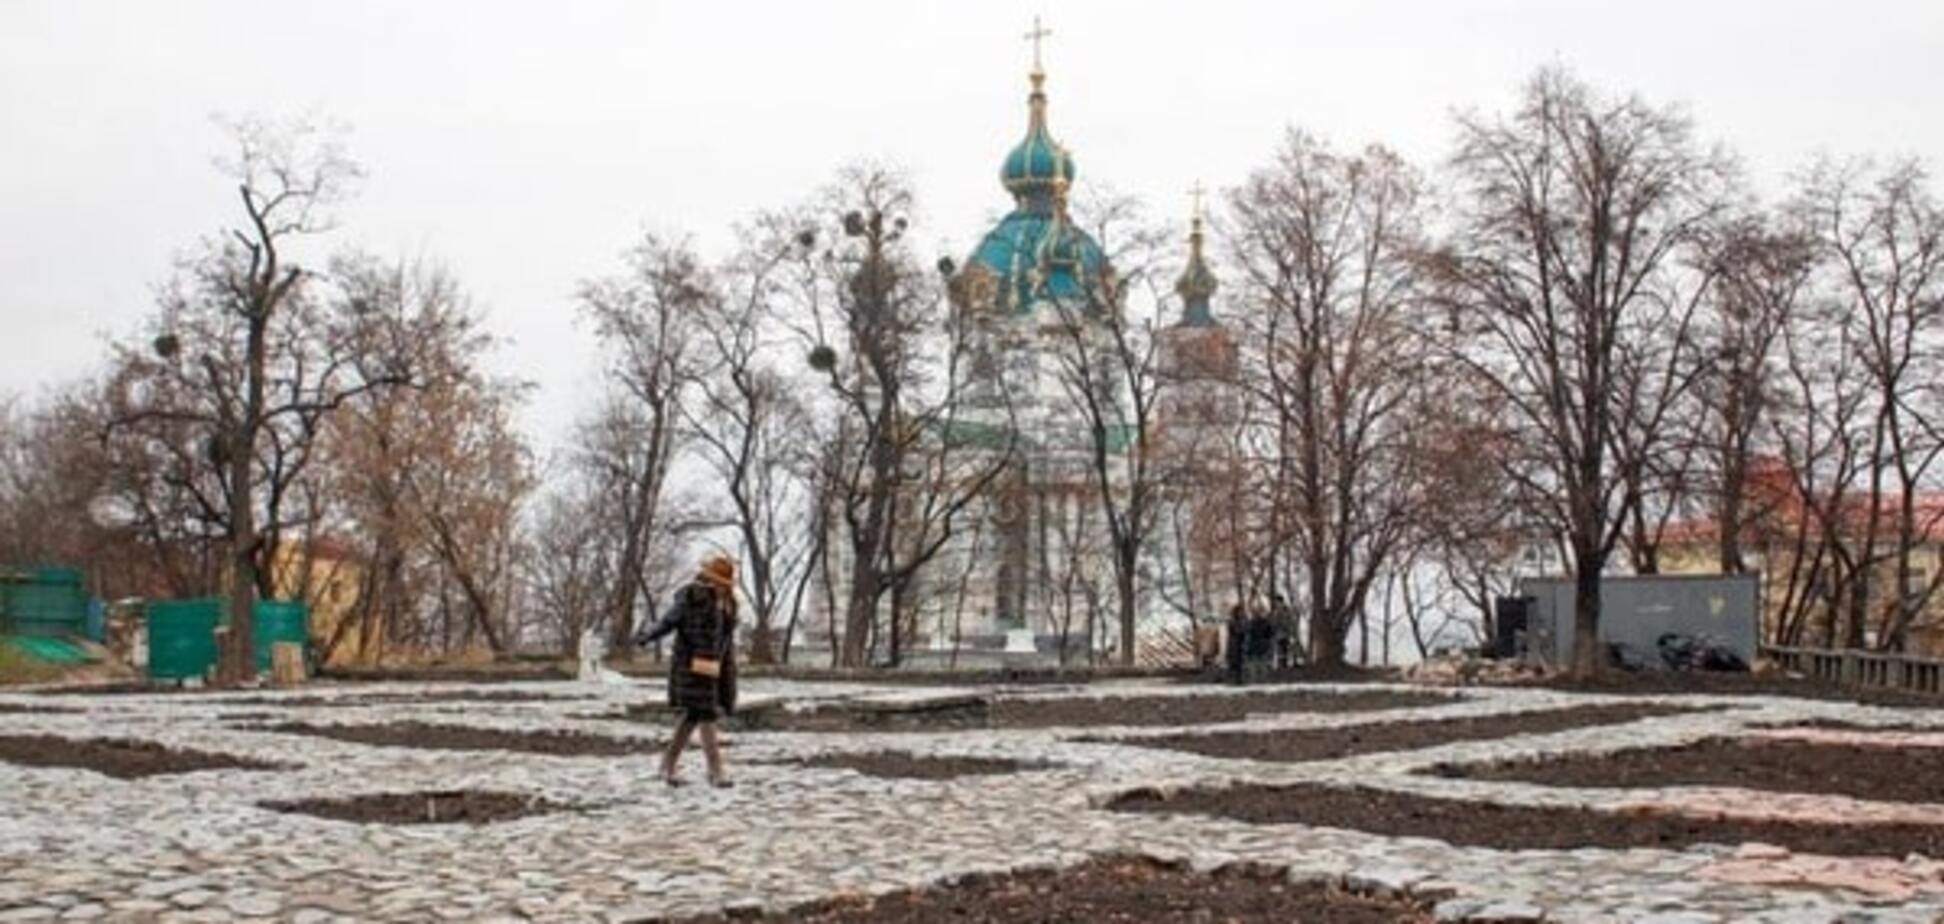 Нове місце для прогулянок: у Києві відкрили фундамент Десятинної церкви